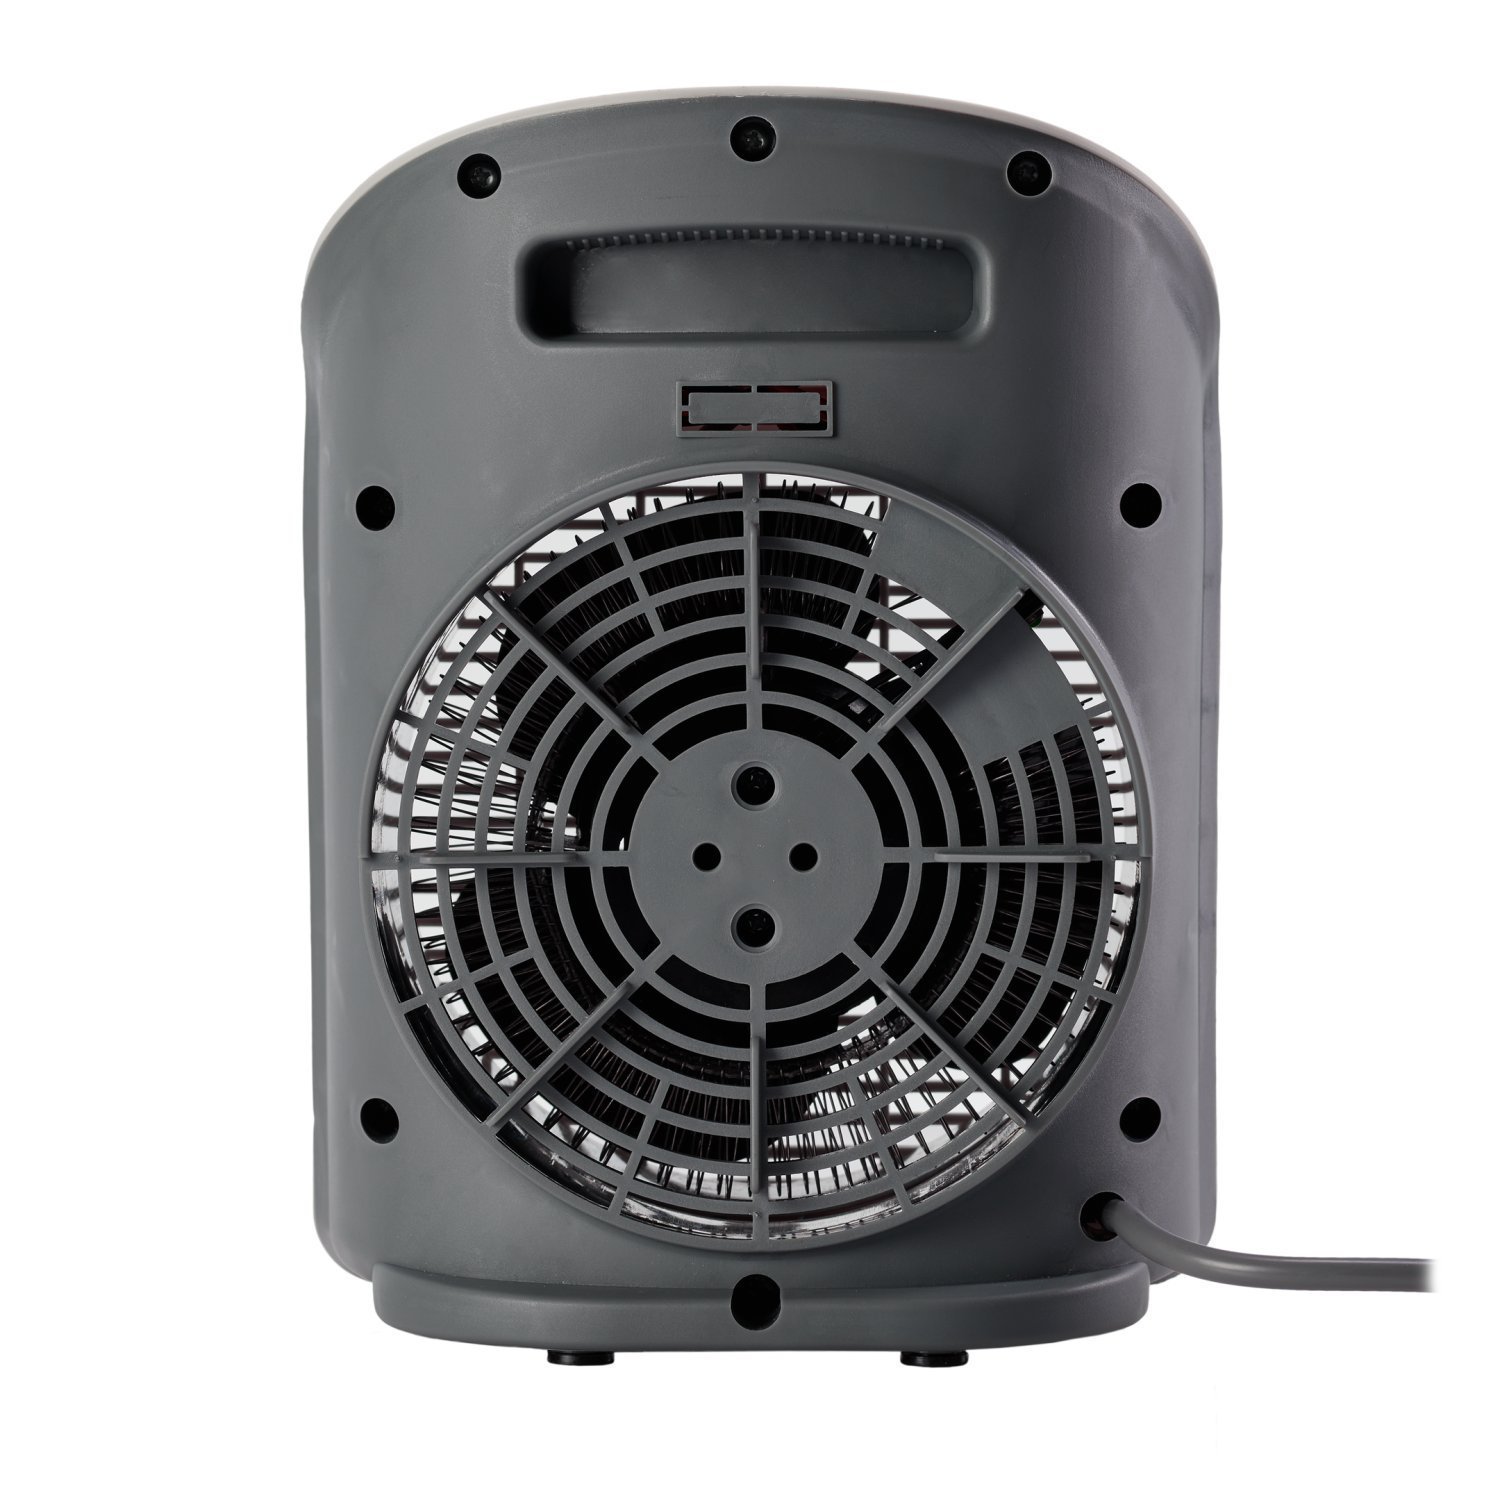 Aquecedor de Ar Portátil Air Heat 3 em 1 1500w 220v WAP Branco - 7